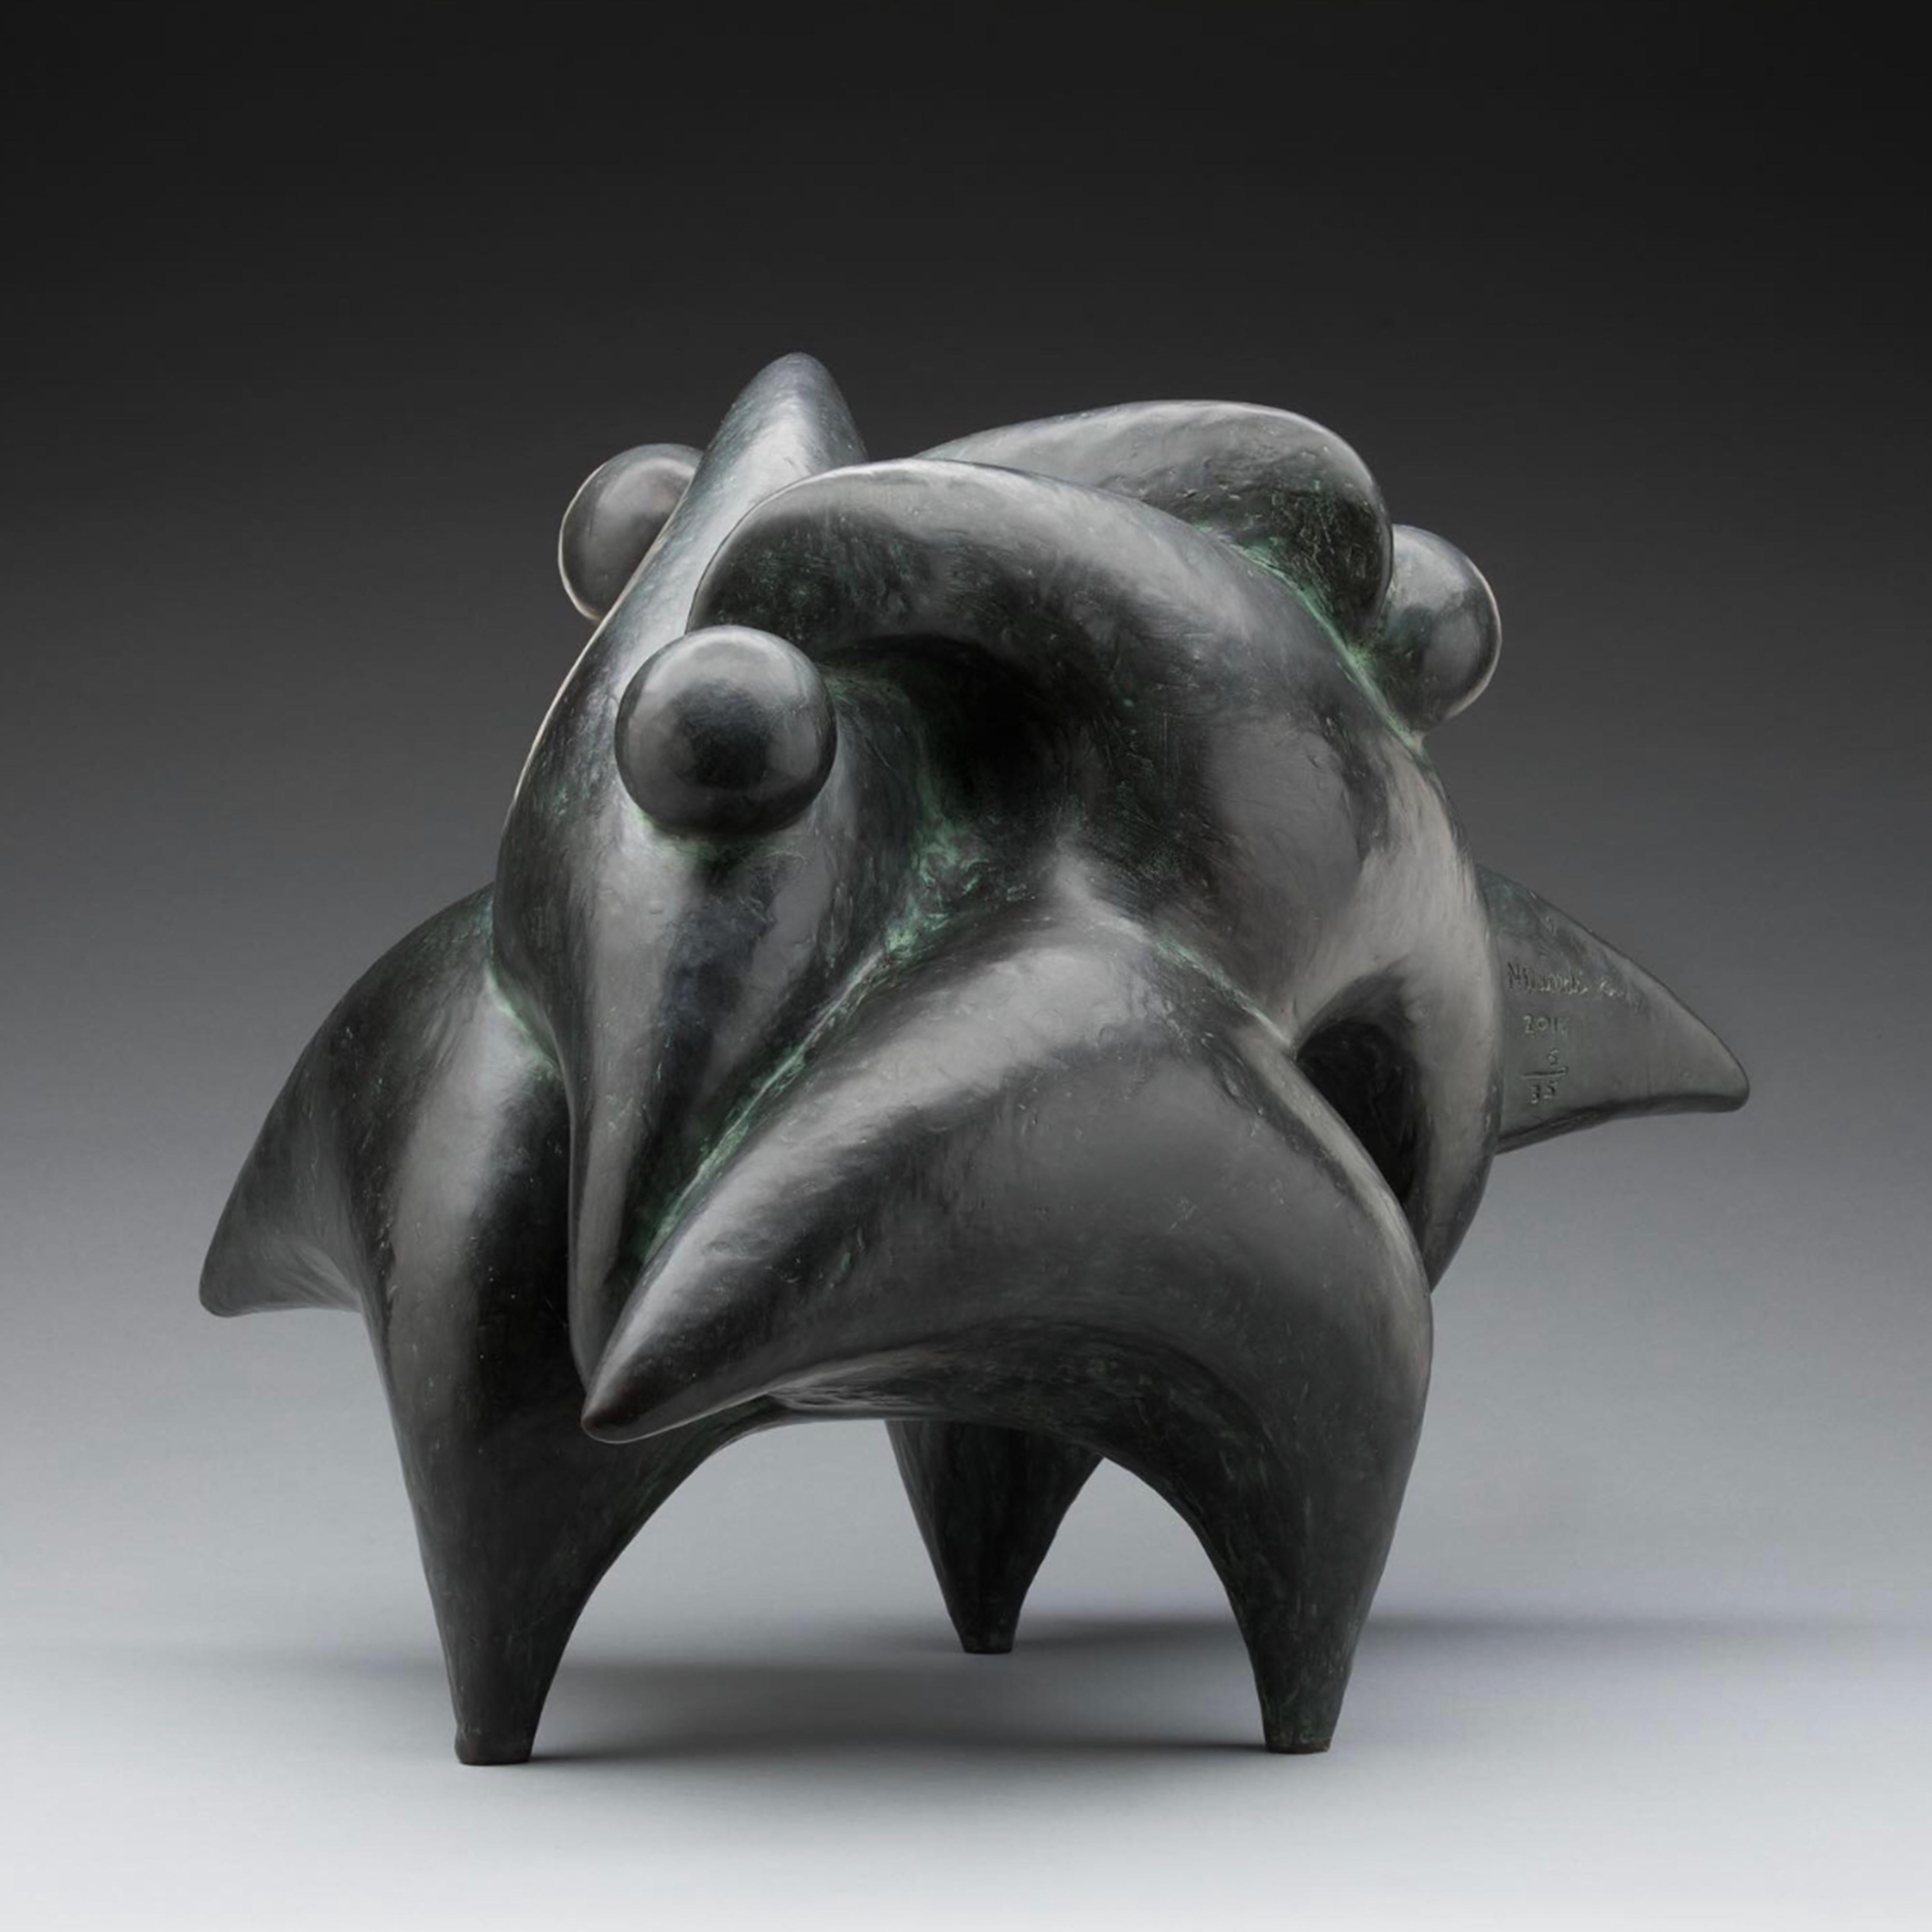 Nnamdi Okonkwo Figurative Sculpture - "Unity" Bronze with Patina and Lacquer